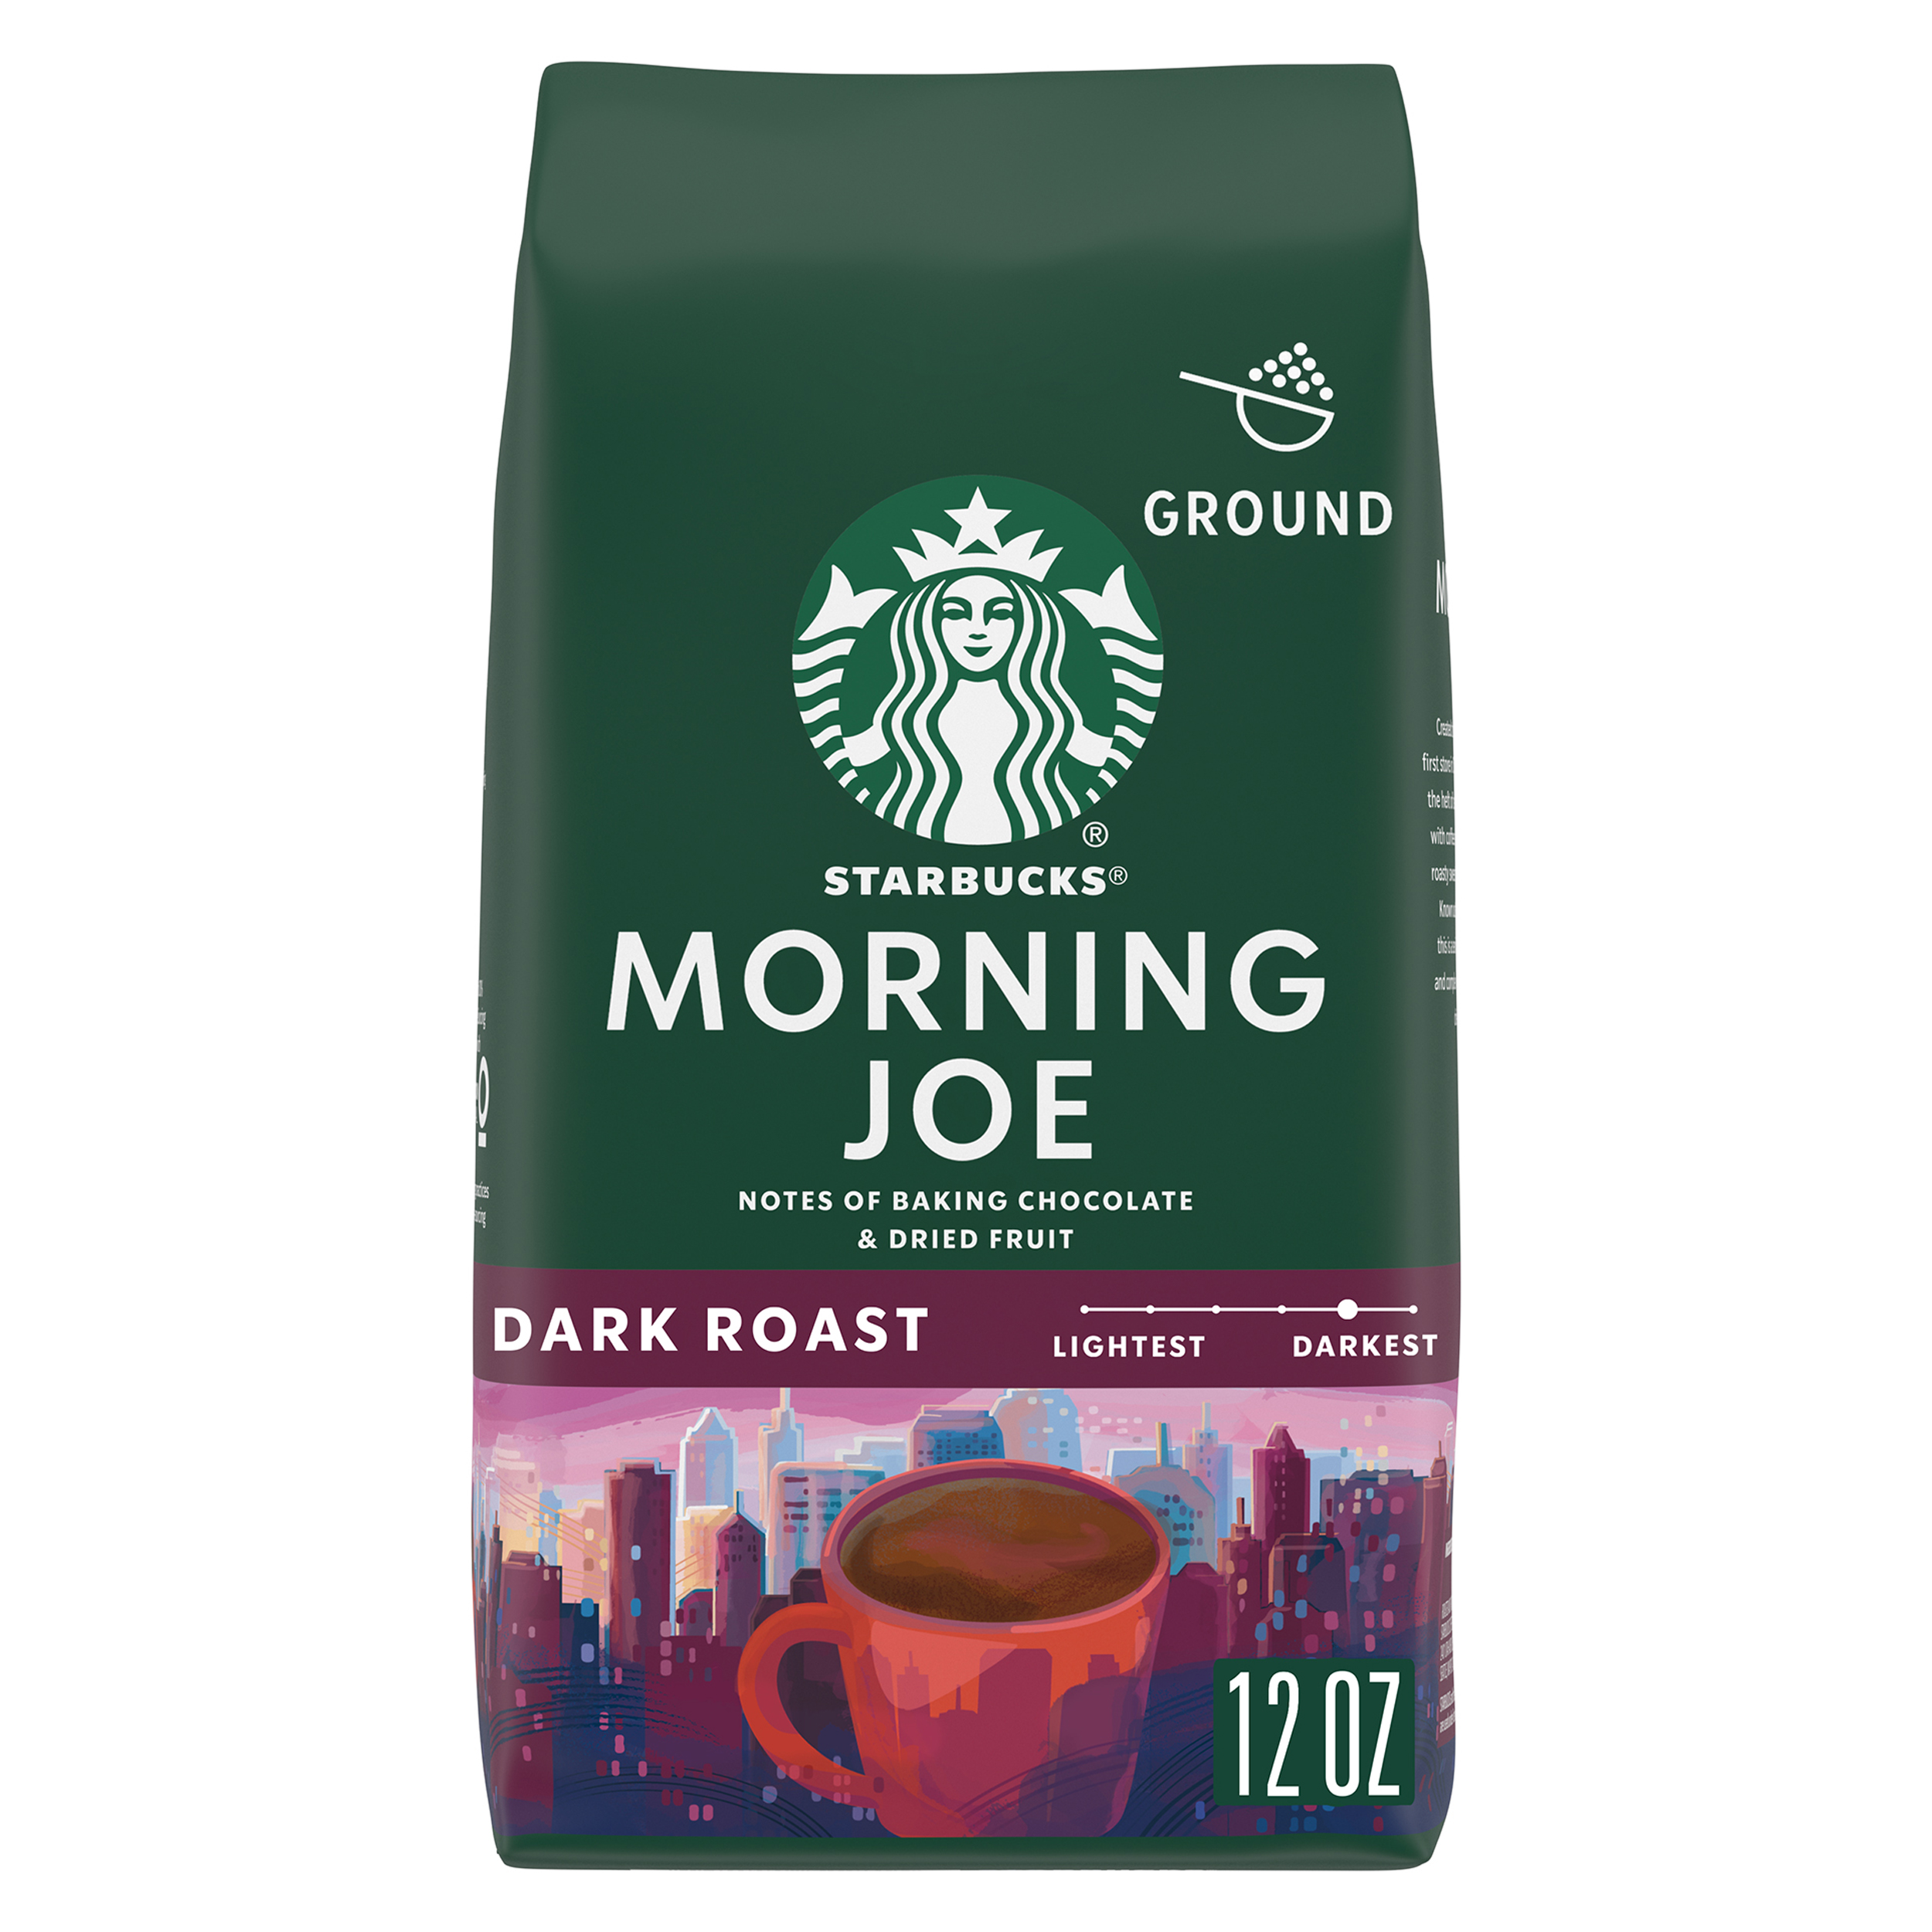 Starbucks Morning Joe, Ground Coffee, Dark Roast, 12 oz - image 1 of 8